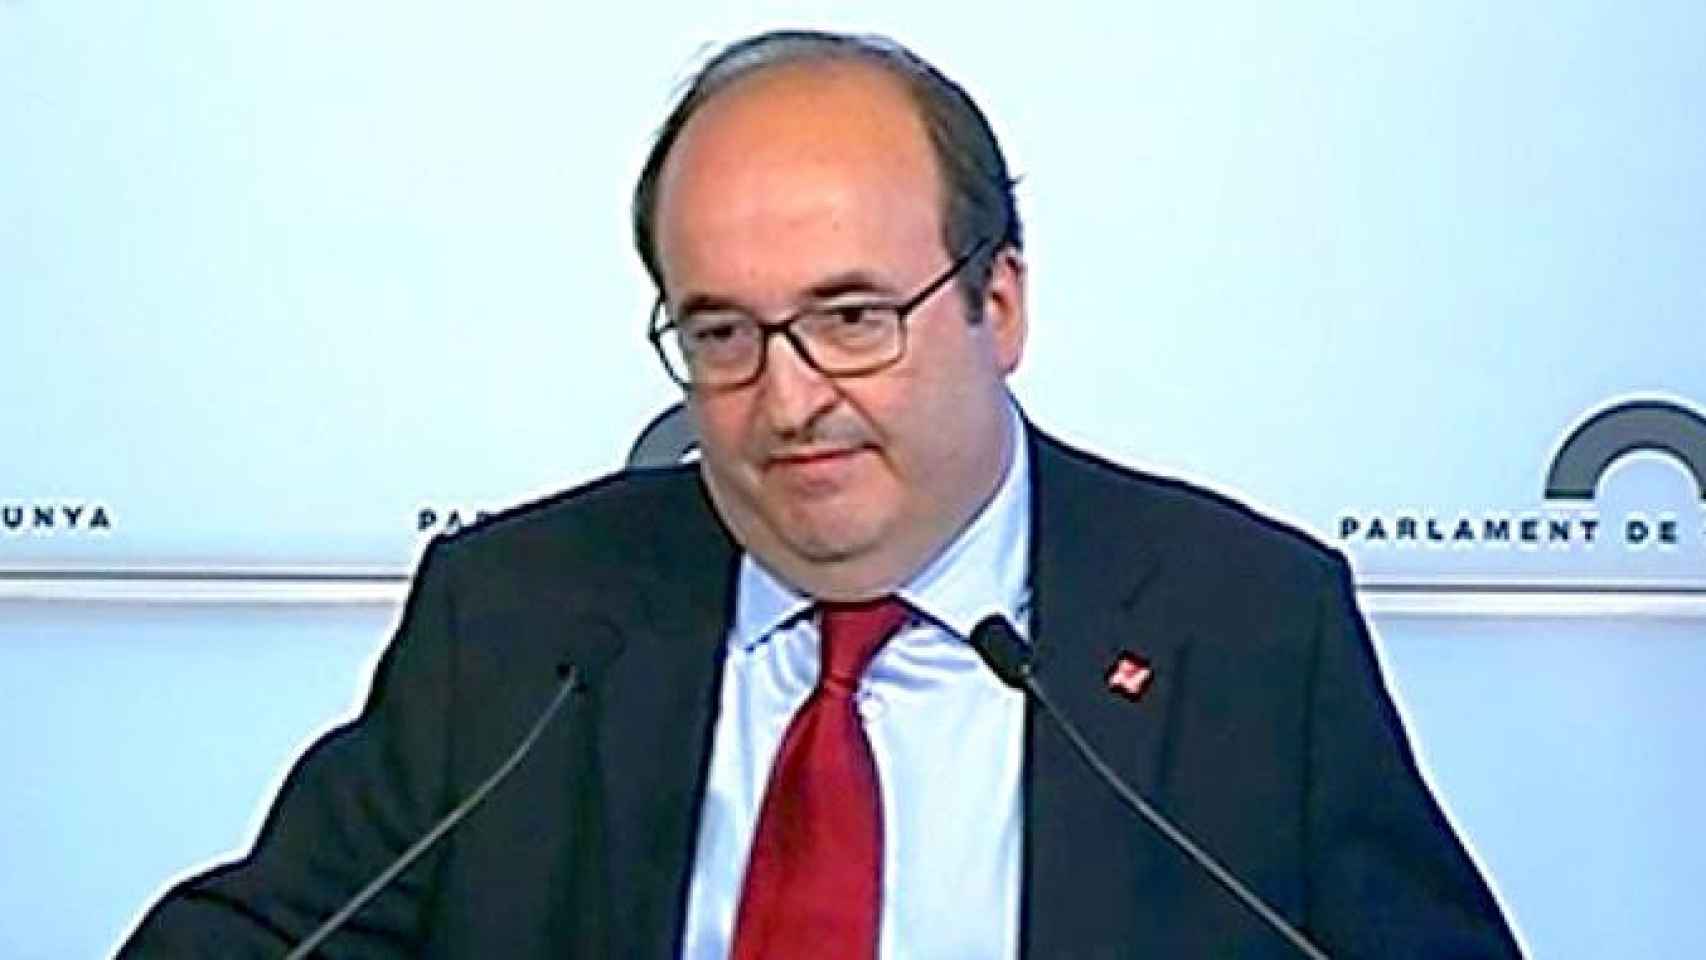 Miquel Iceta en el Parlament de Cataluña / CG